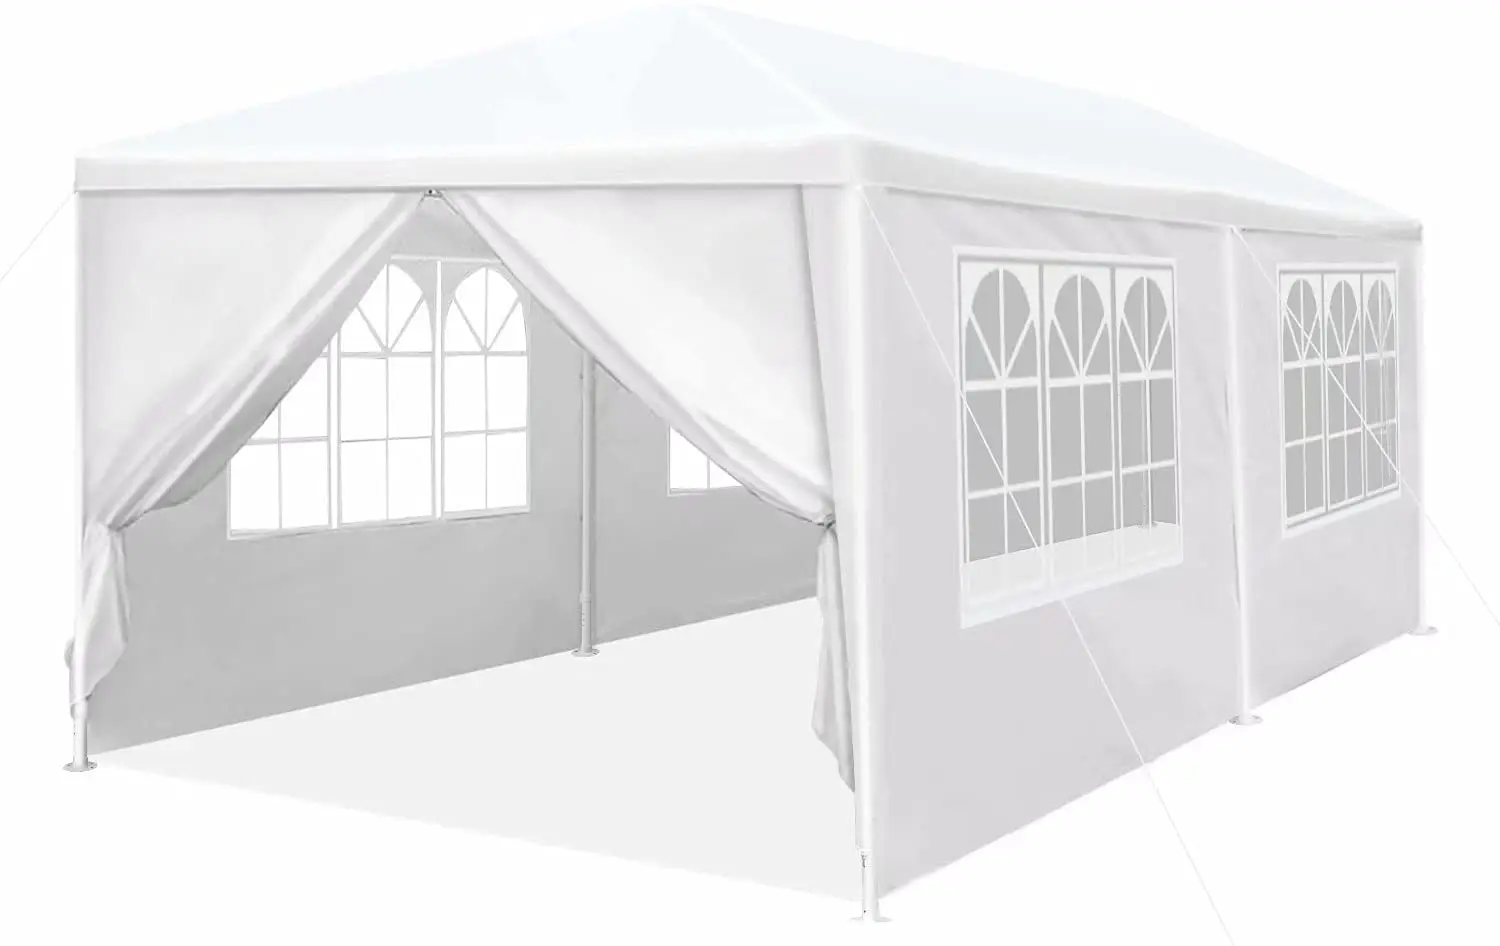 show original title Details about   Tente de réception arbour gazebo folding tent garden events 3x6m new 